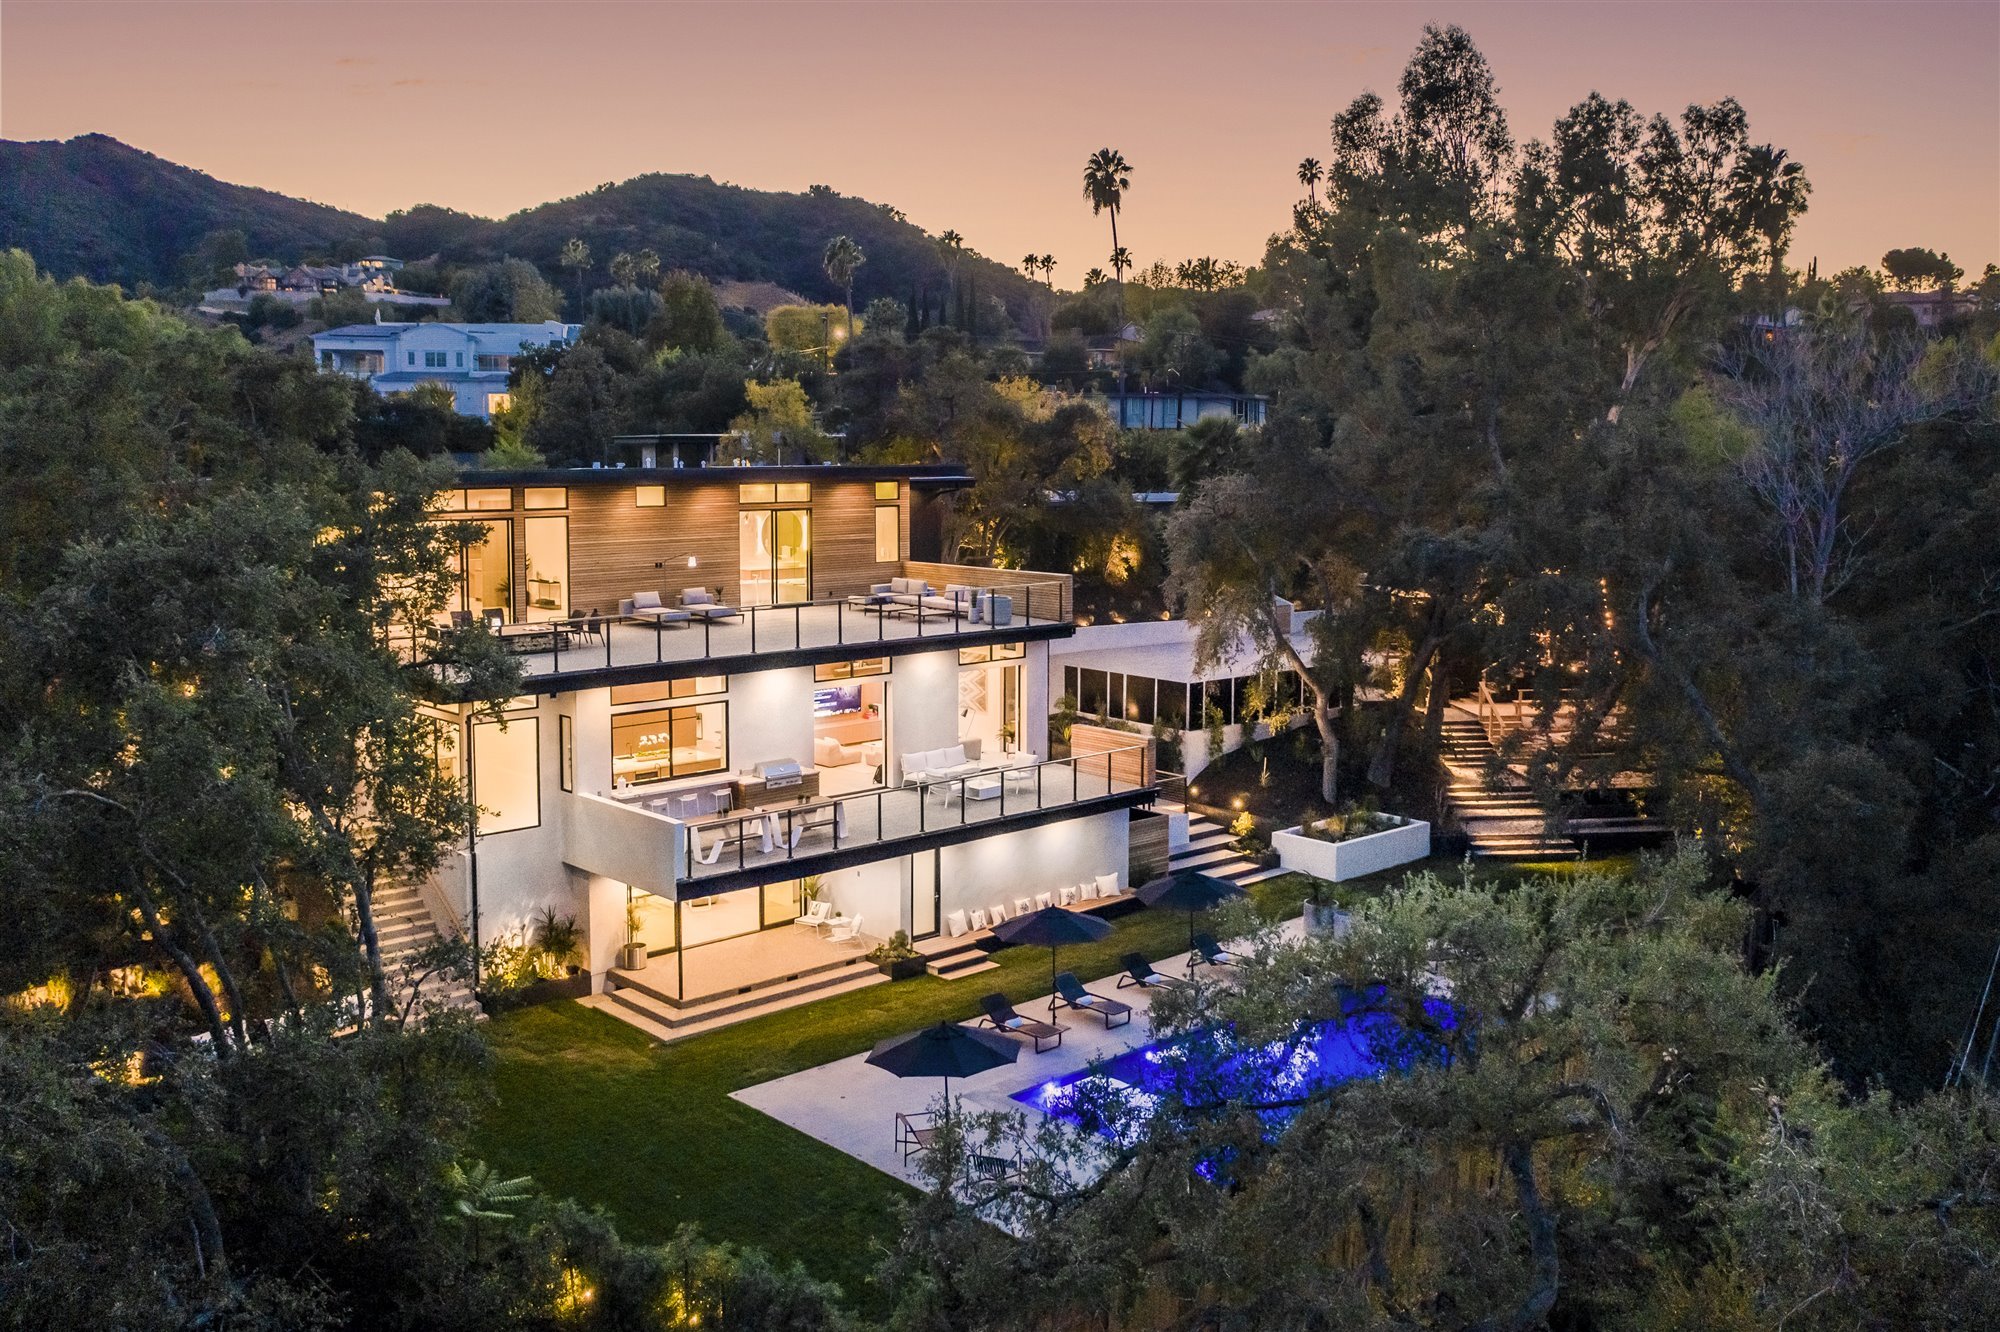 Casa moderna del actor de Modern Family Jesse Tyler Ferguson en Encino los Angeles vistas a la piscina